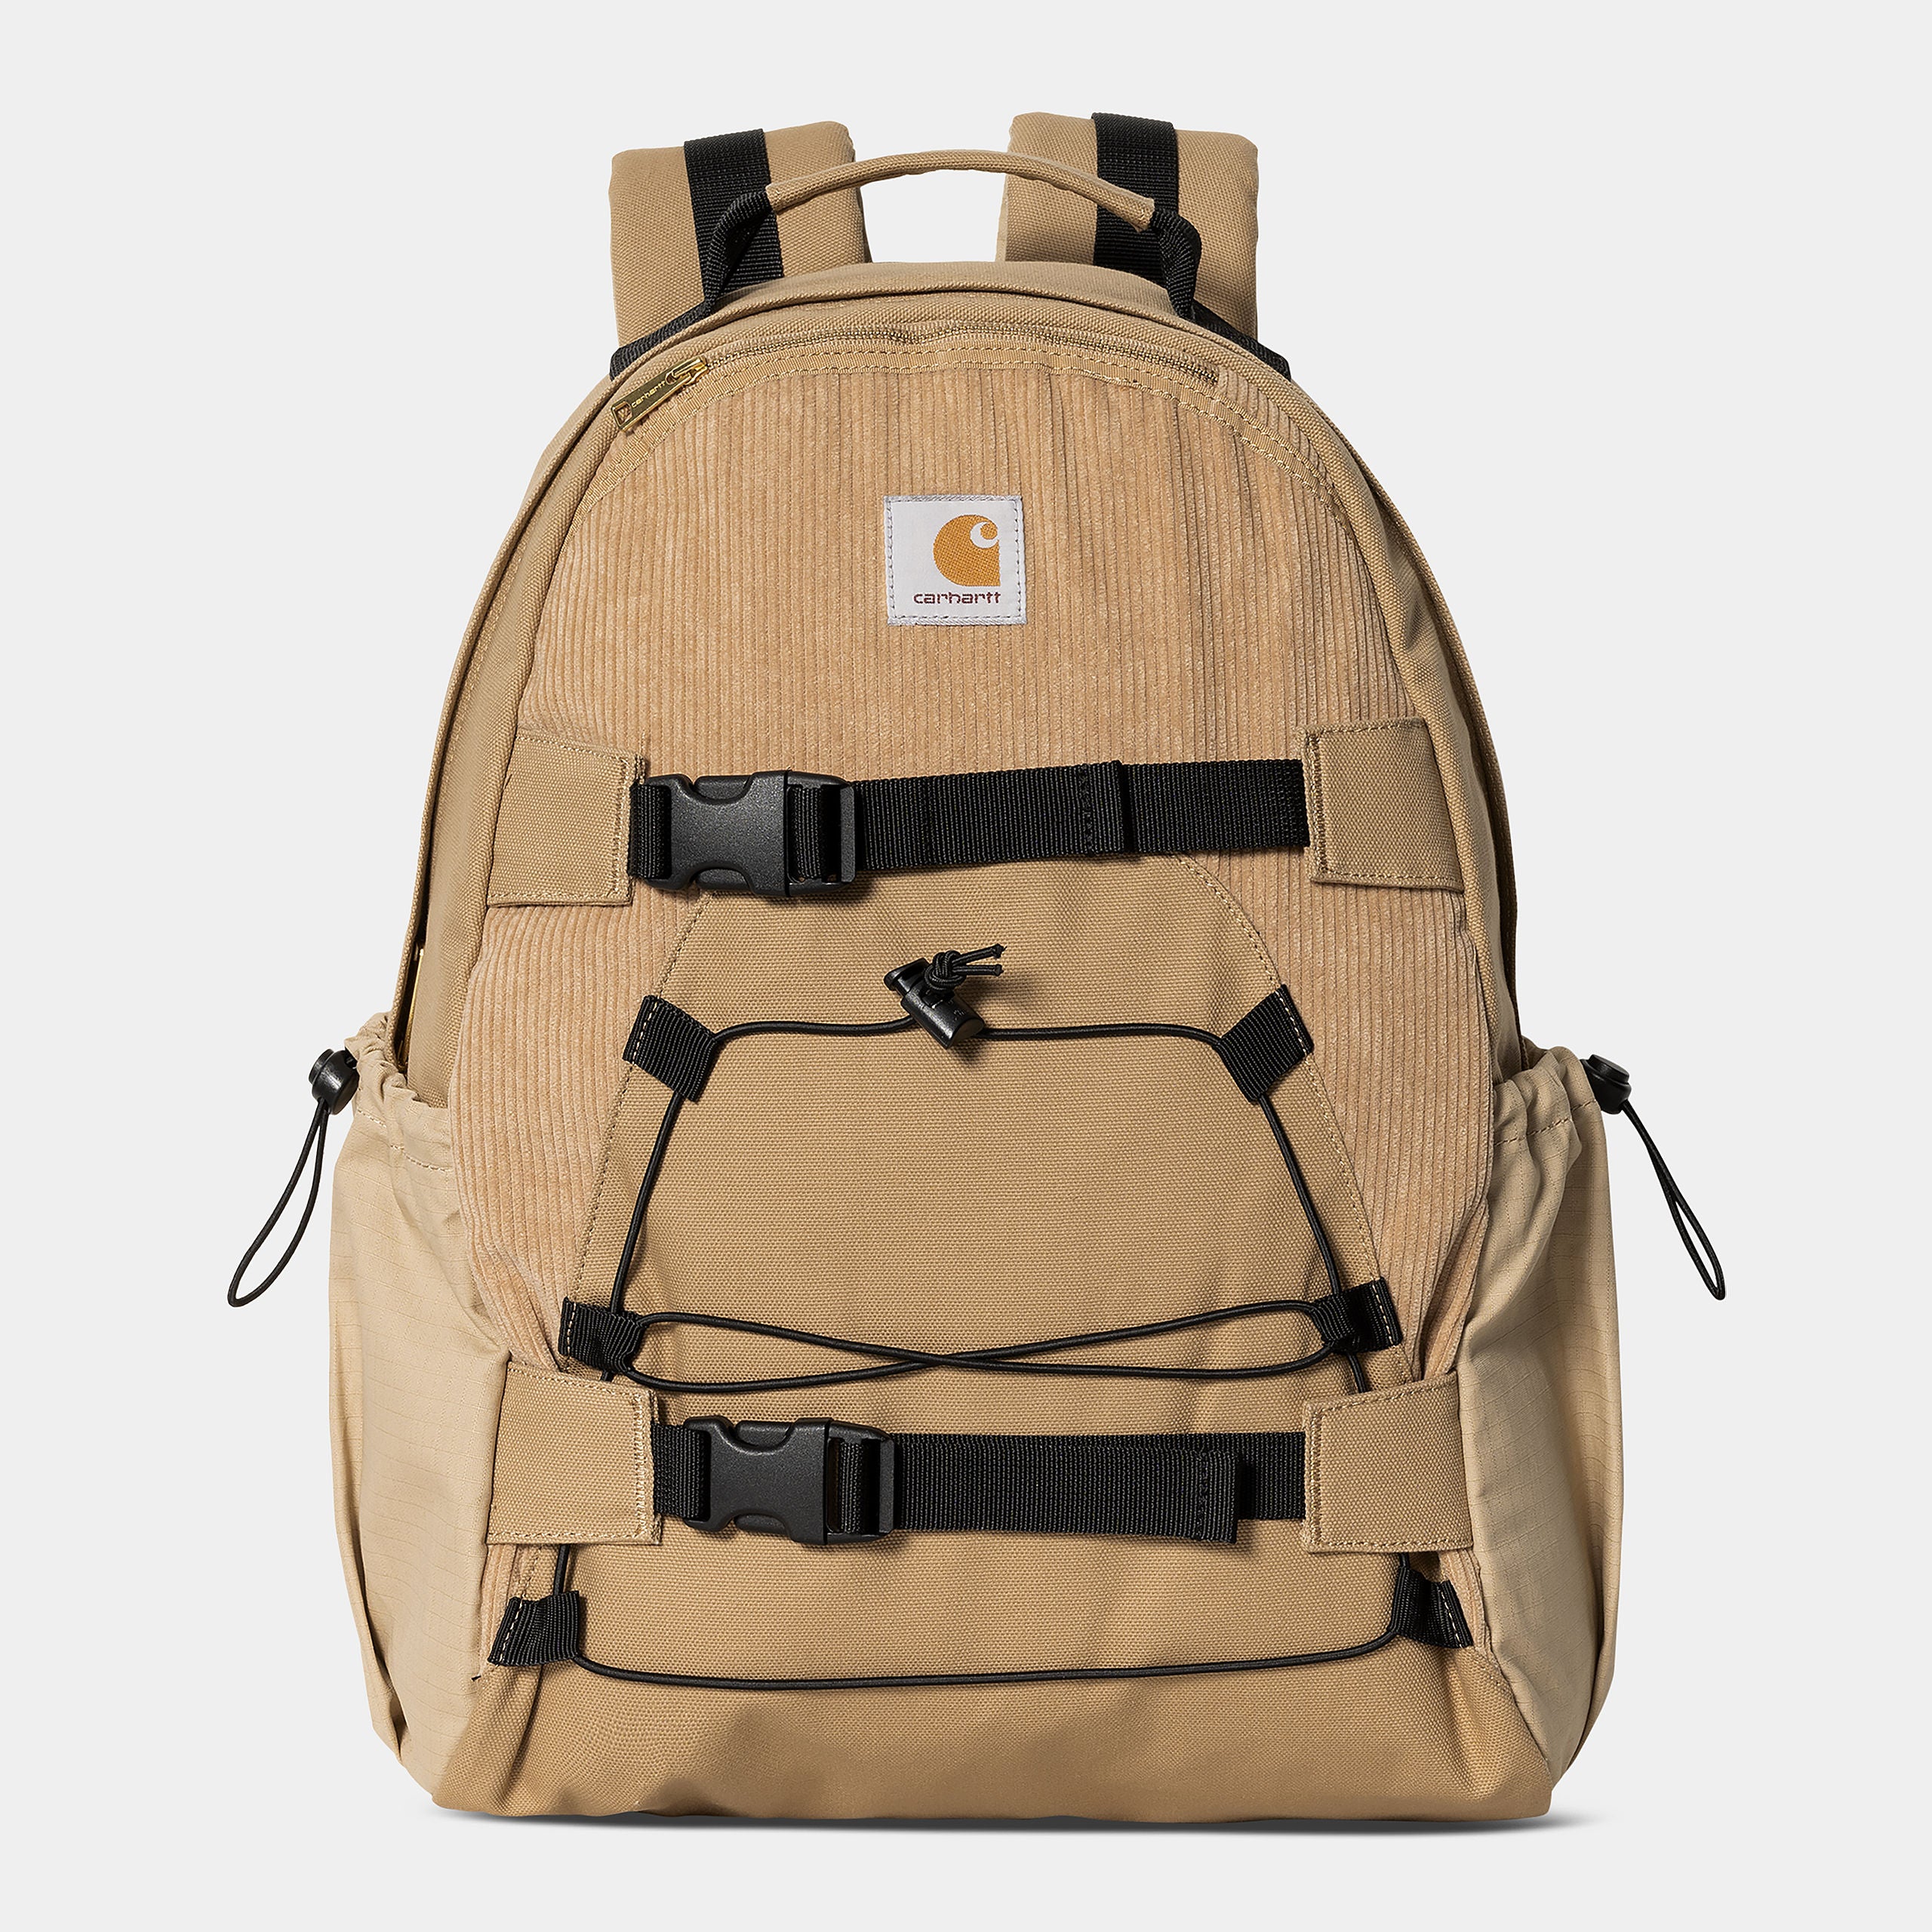 Medley Backpack von Carhartt WIP aus verschiedenen Stoffarten wie Cord, Canvas und Ripstop in farbe Hellbraun.